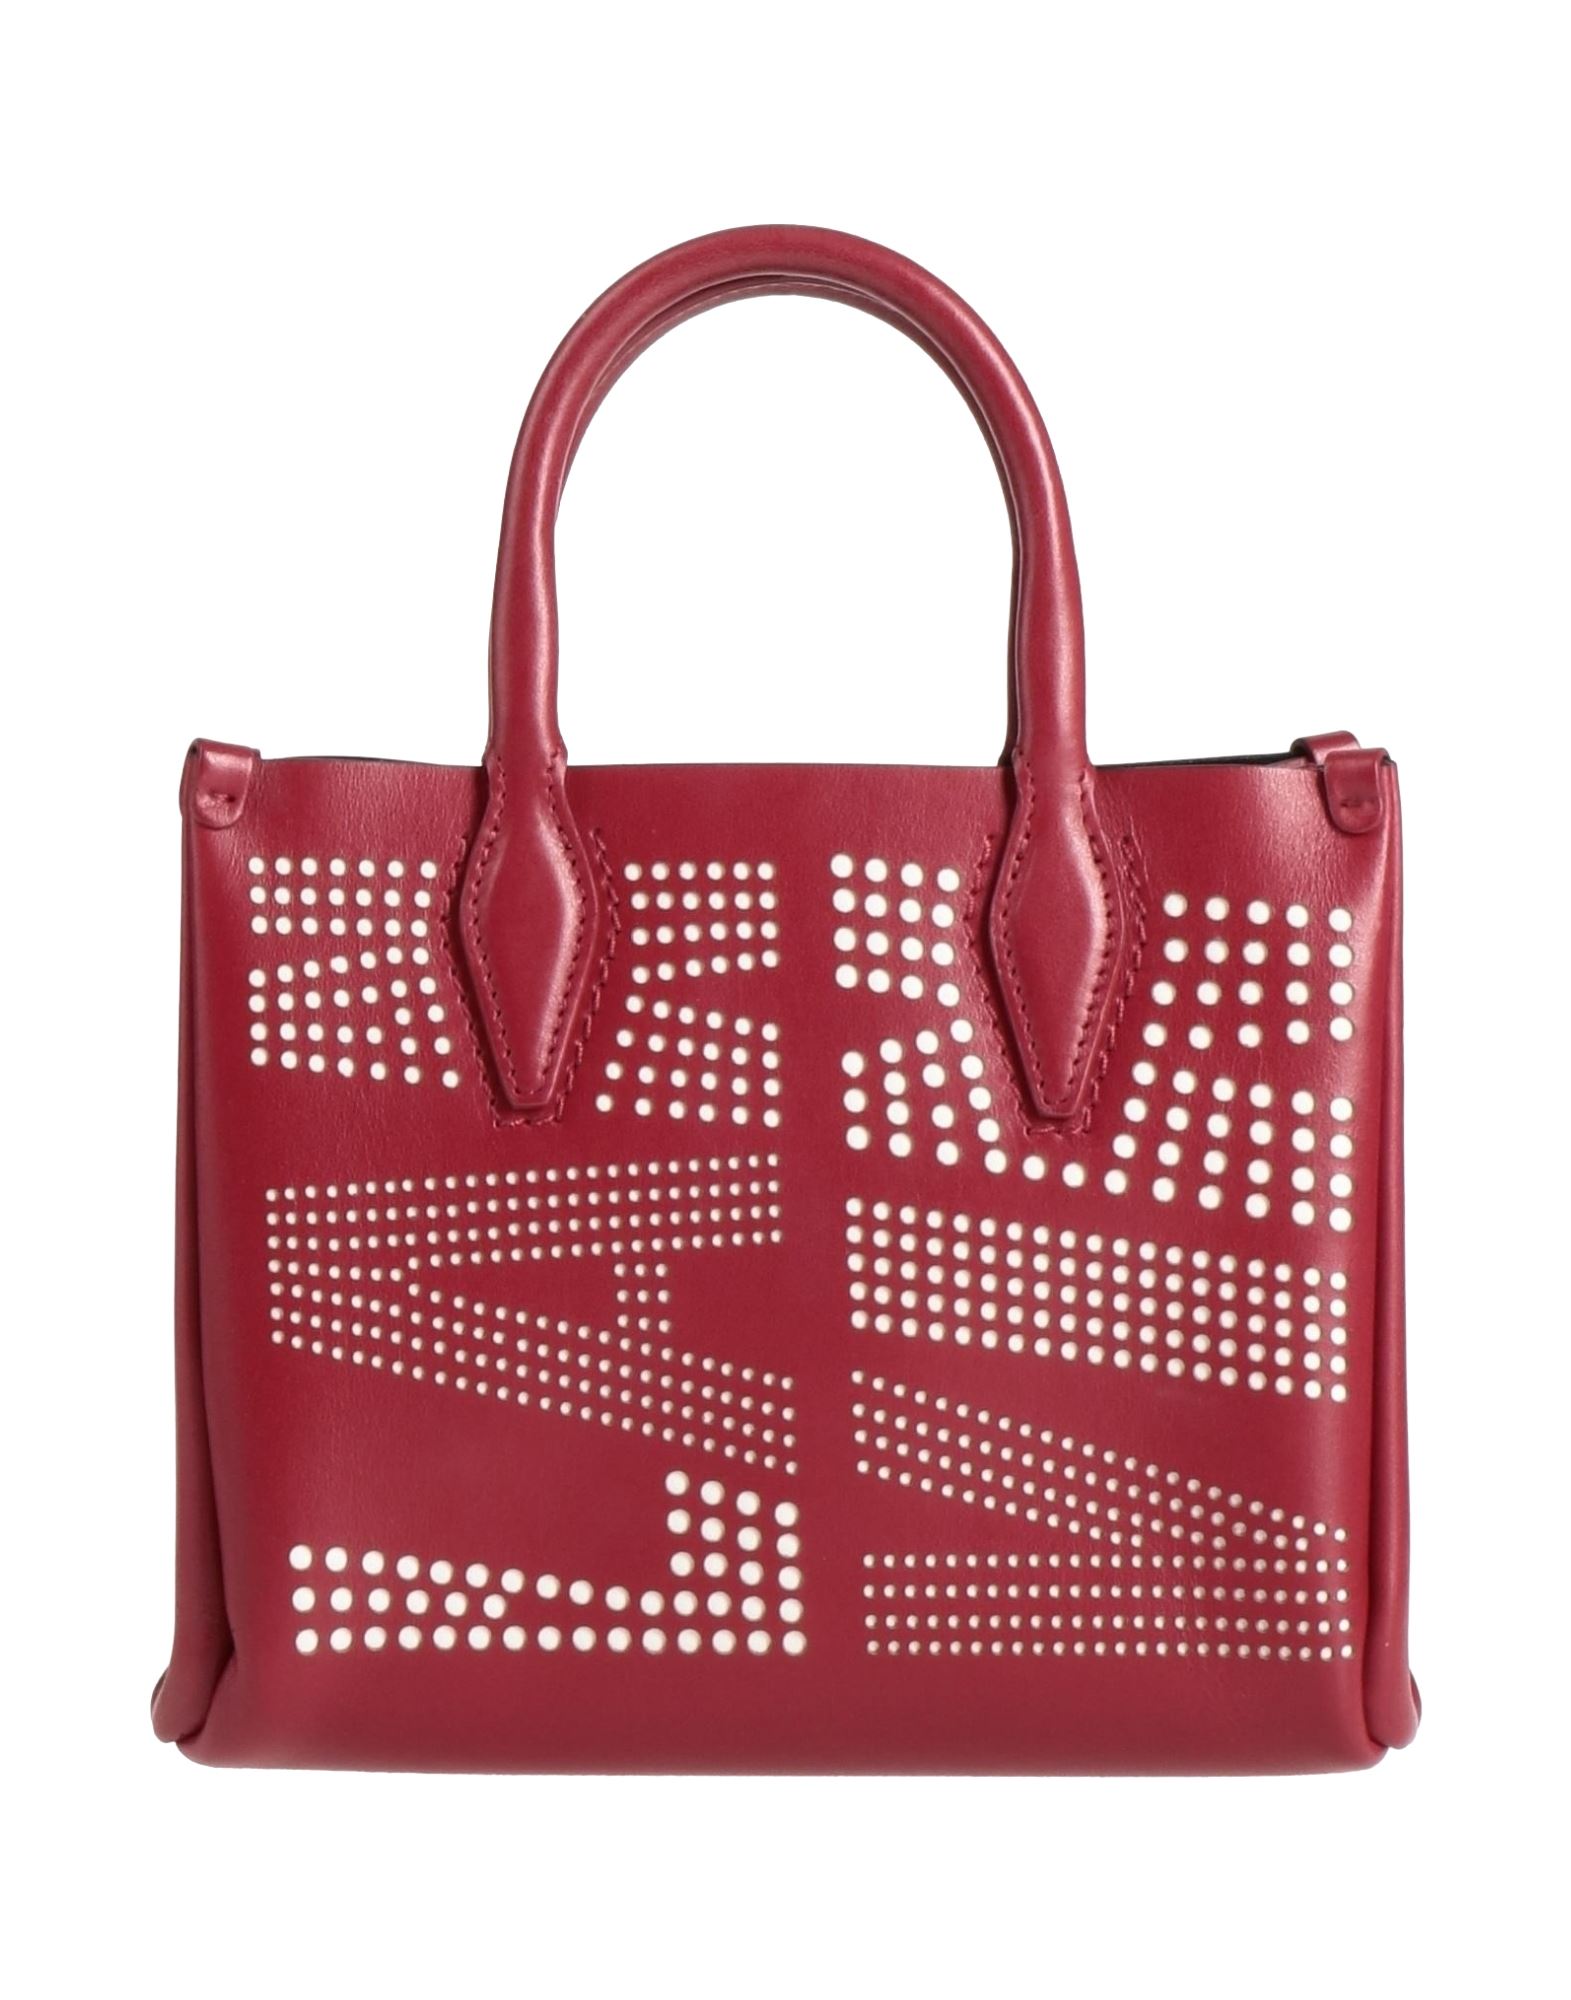 Lanvin Handbags In Brick Red